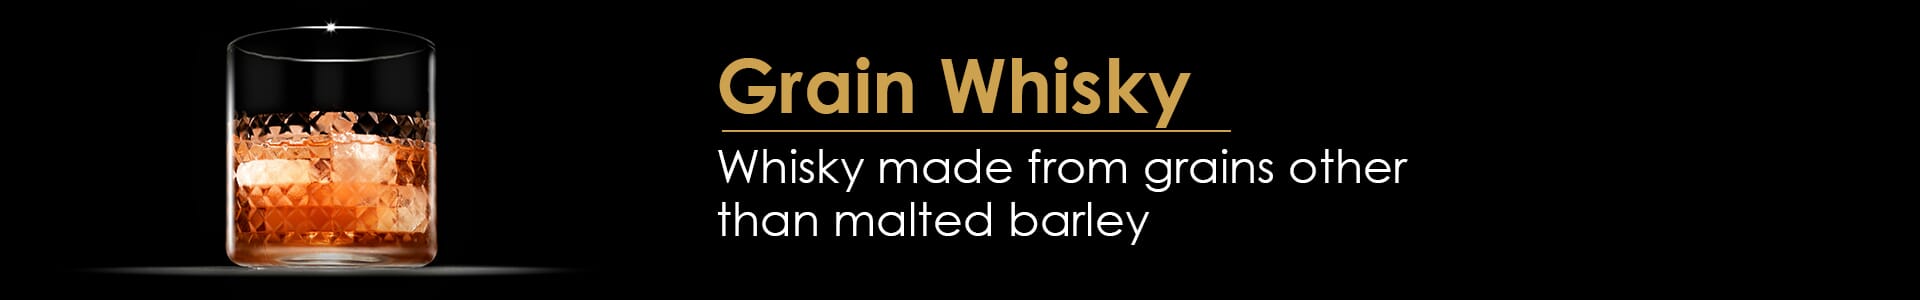 Grain Whisky